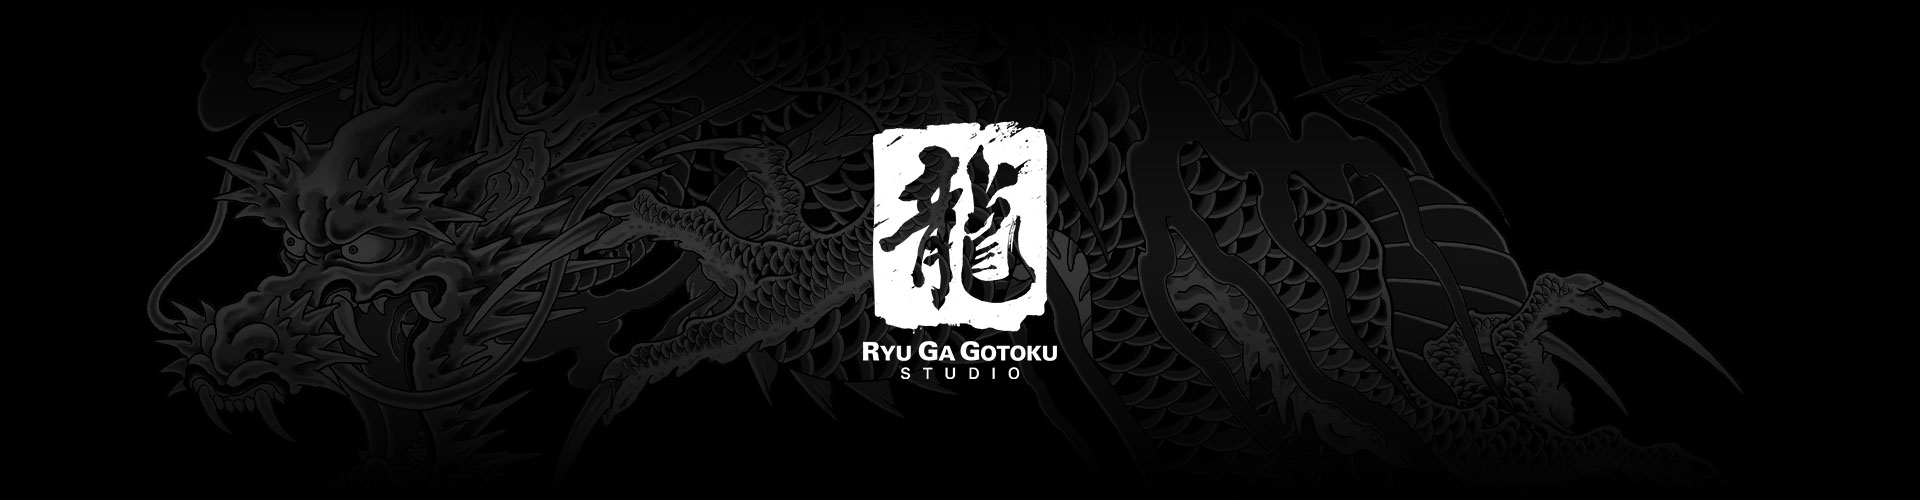 グレーの龍の刺青を背景にした龍が如くスタジオのロゴ。